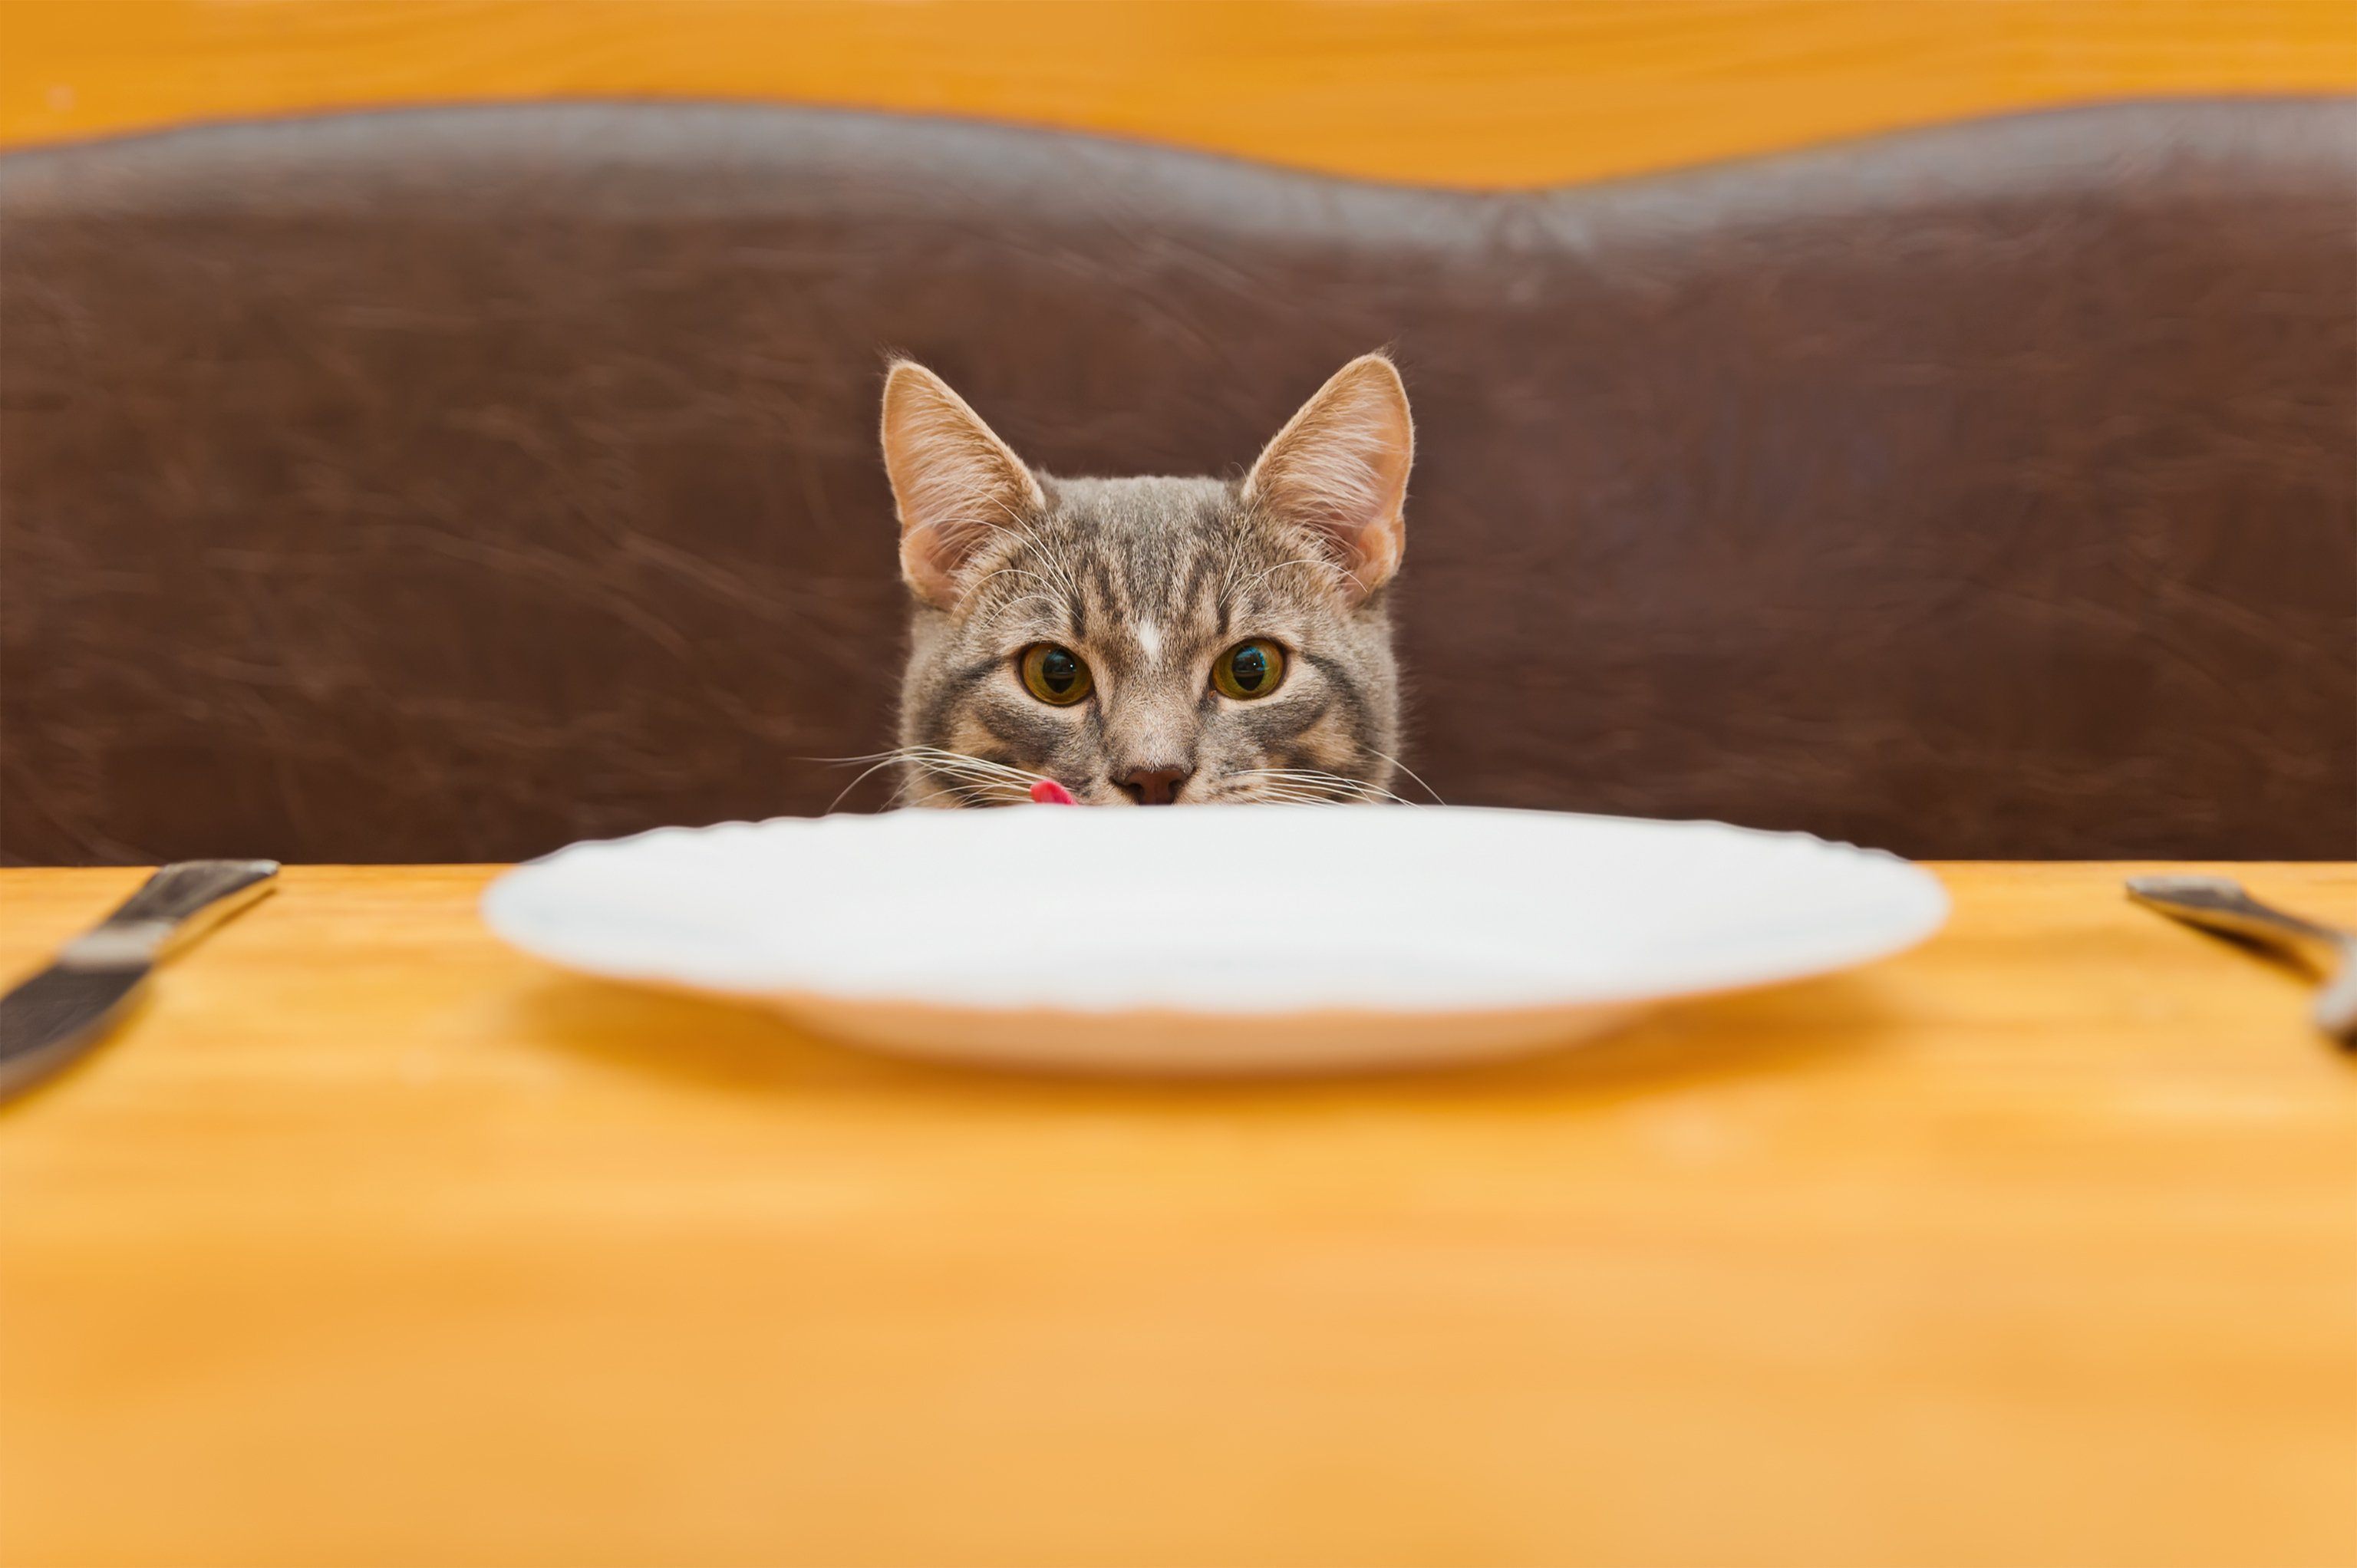 Бывает и голодный. Голодный кот. Голодный котенок. Кот в тарелке. Котик с пустой миской.